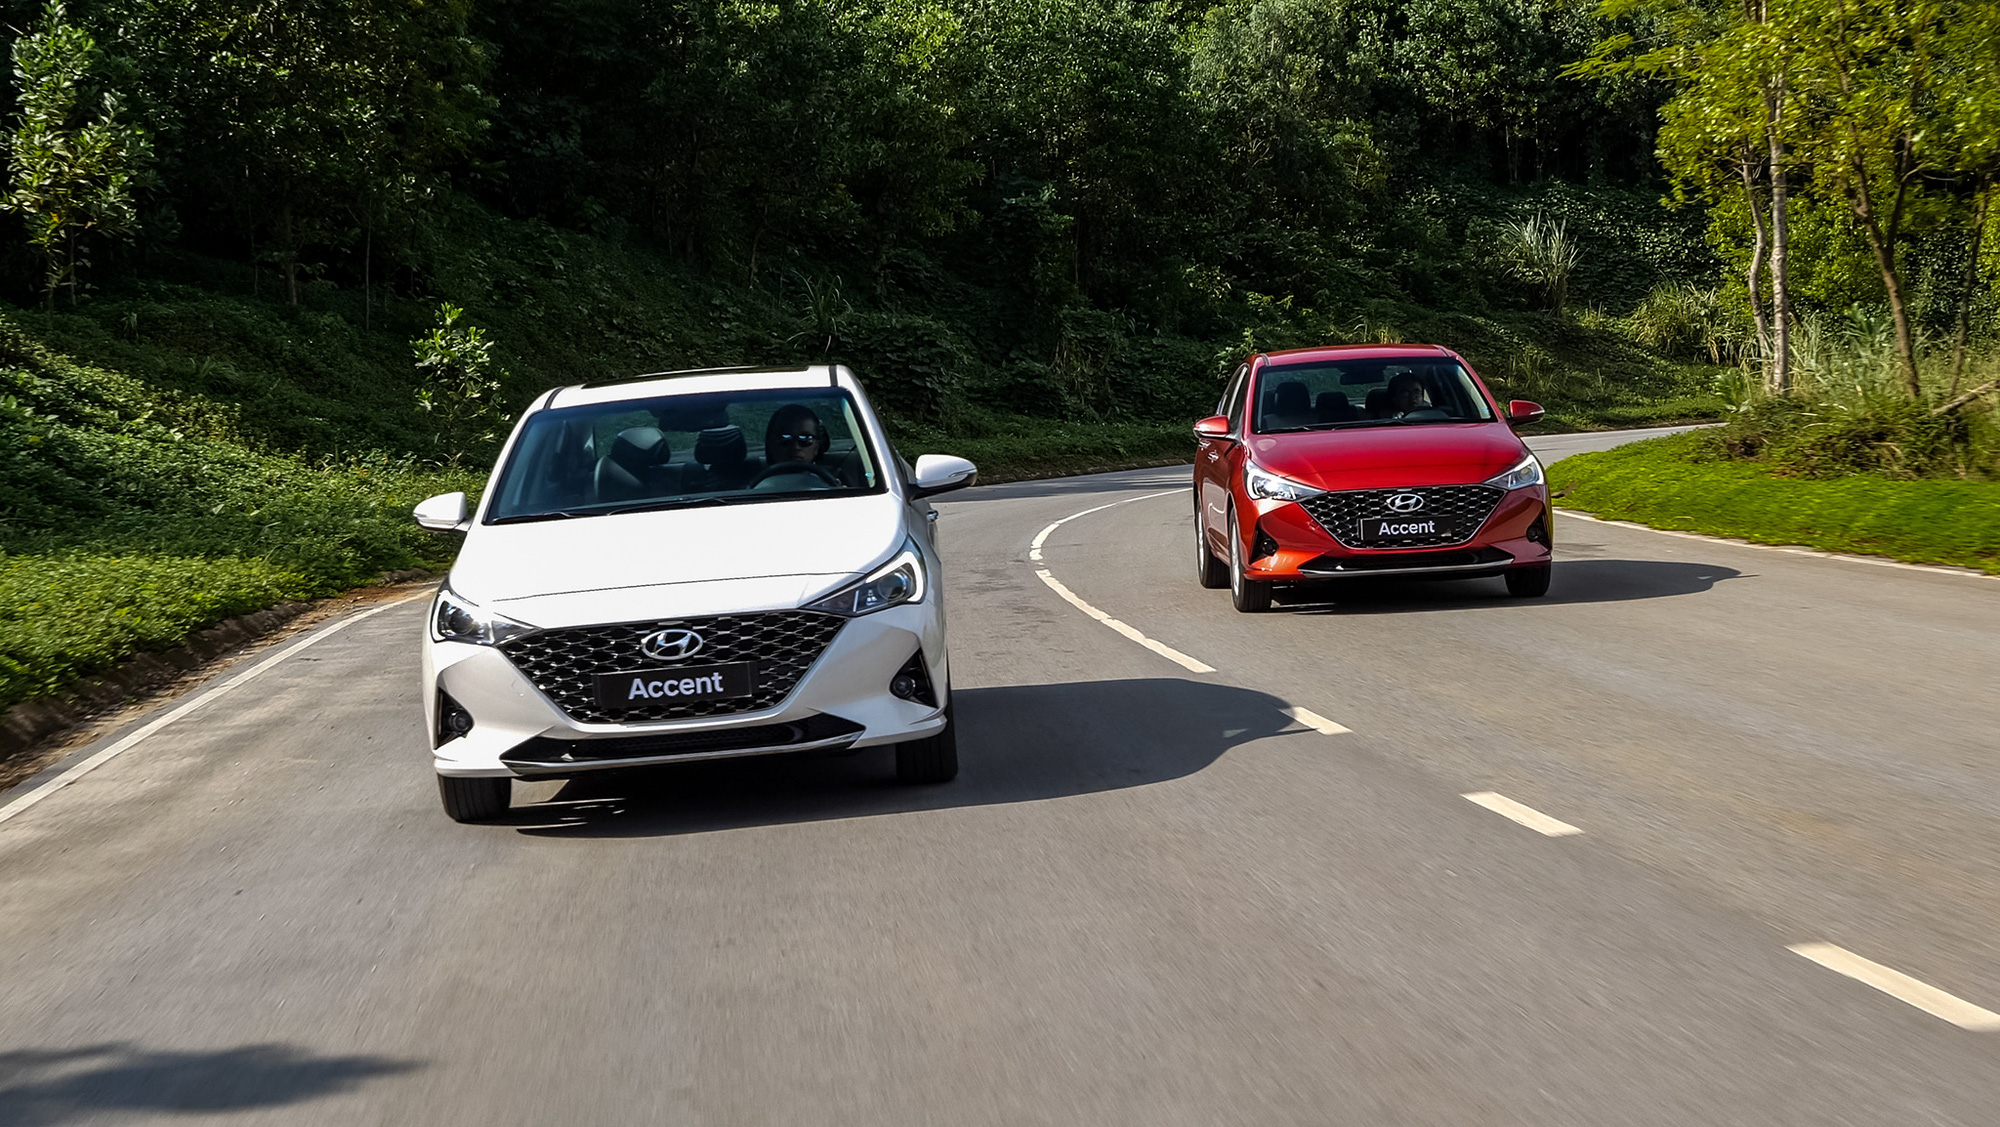 Chênh 116 triệu đồng, đây là sự khác biệt giữa 4 phiên bản Hyundai Accent 2021 tại thị trường Việt Nam - Ảnh 6.